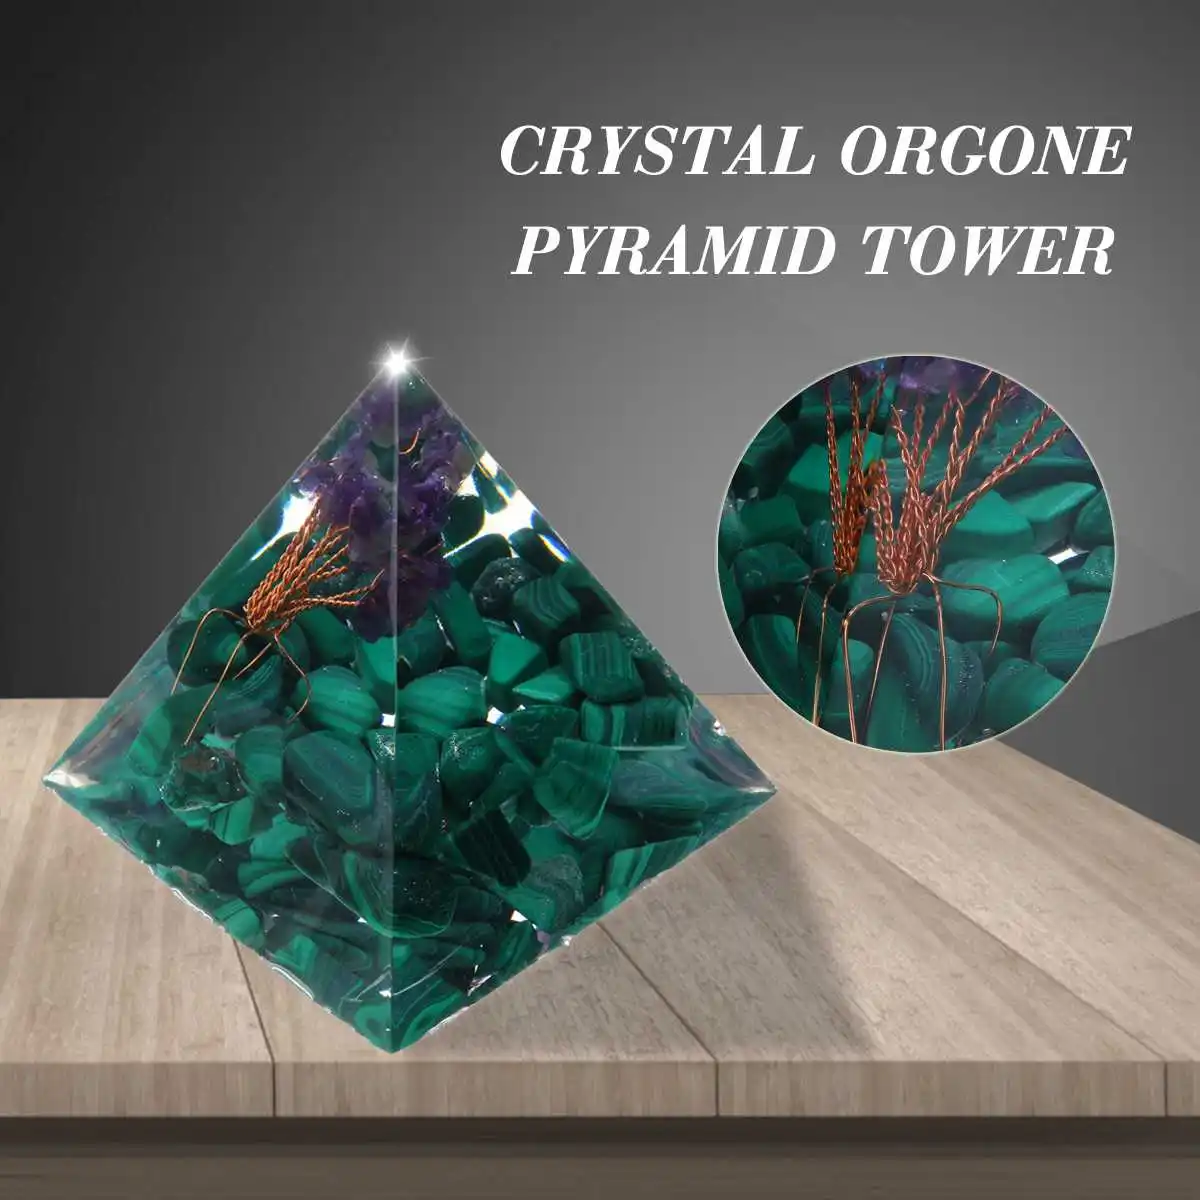 Cristal Verde Árbol de la Vida, de la Energía Círculo de Sanación Reiki Cristal de la Pirámide de los Chakras de la Piedra Natural de Orgón Orgonite Pirámides Fengshui 0